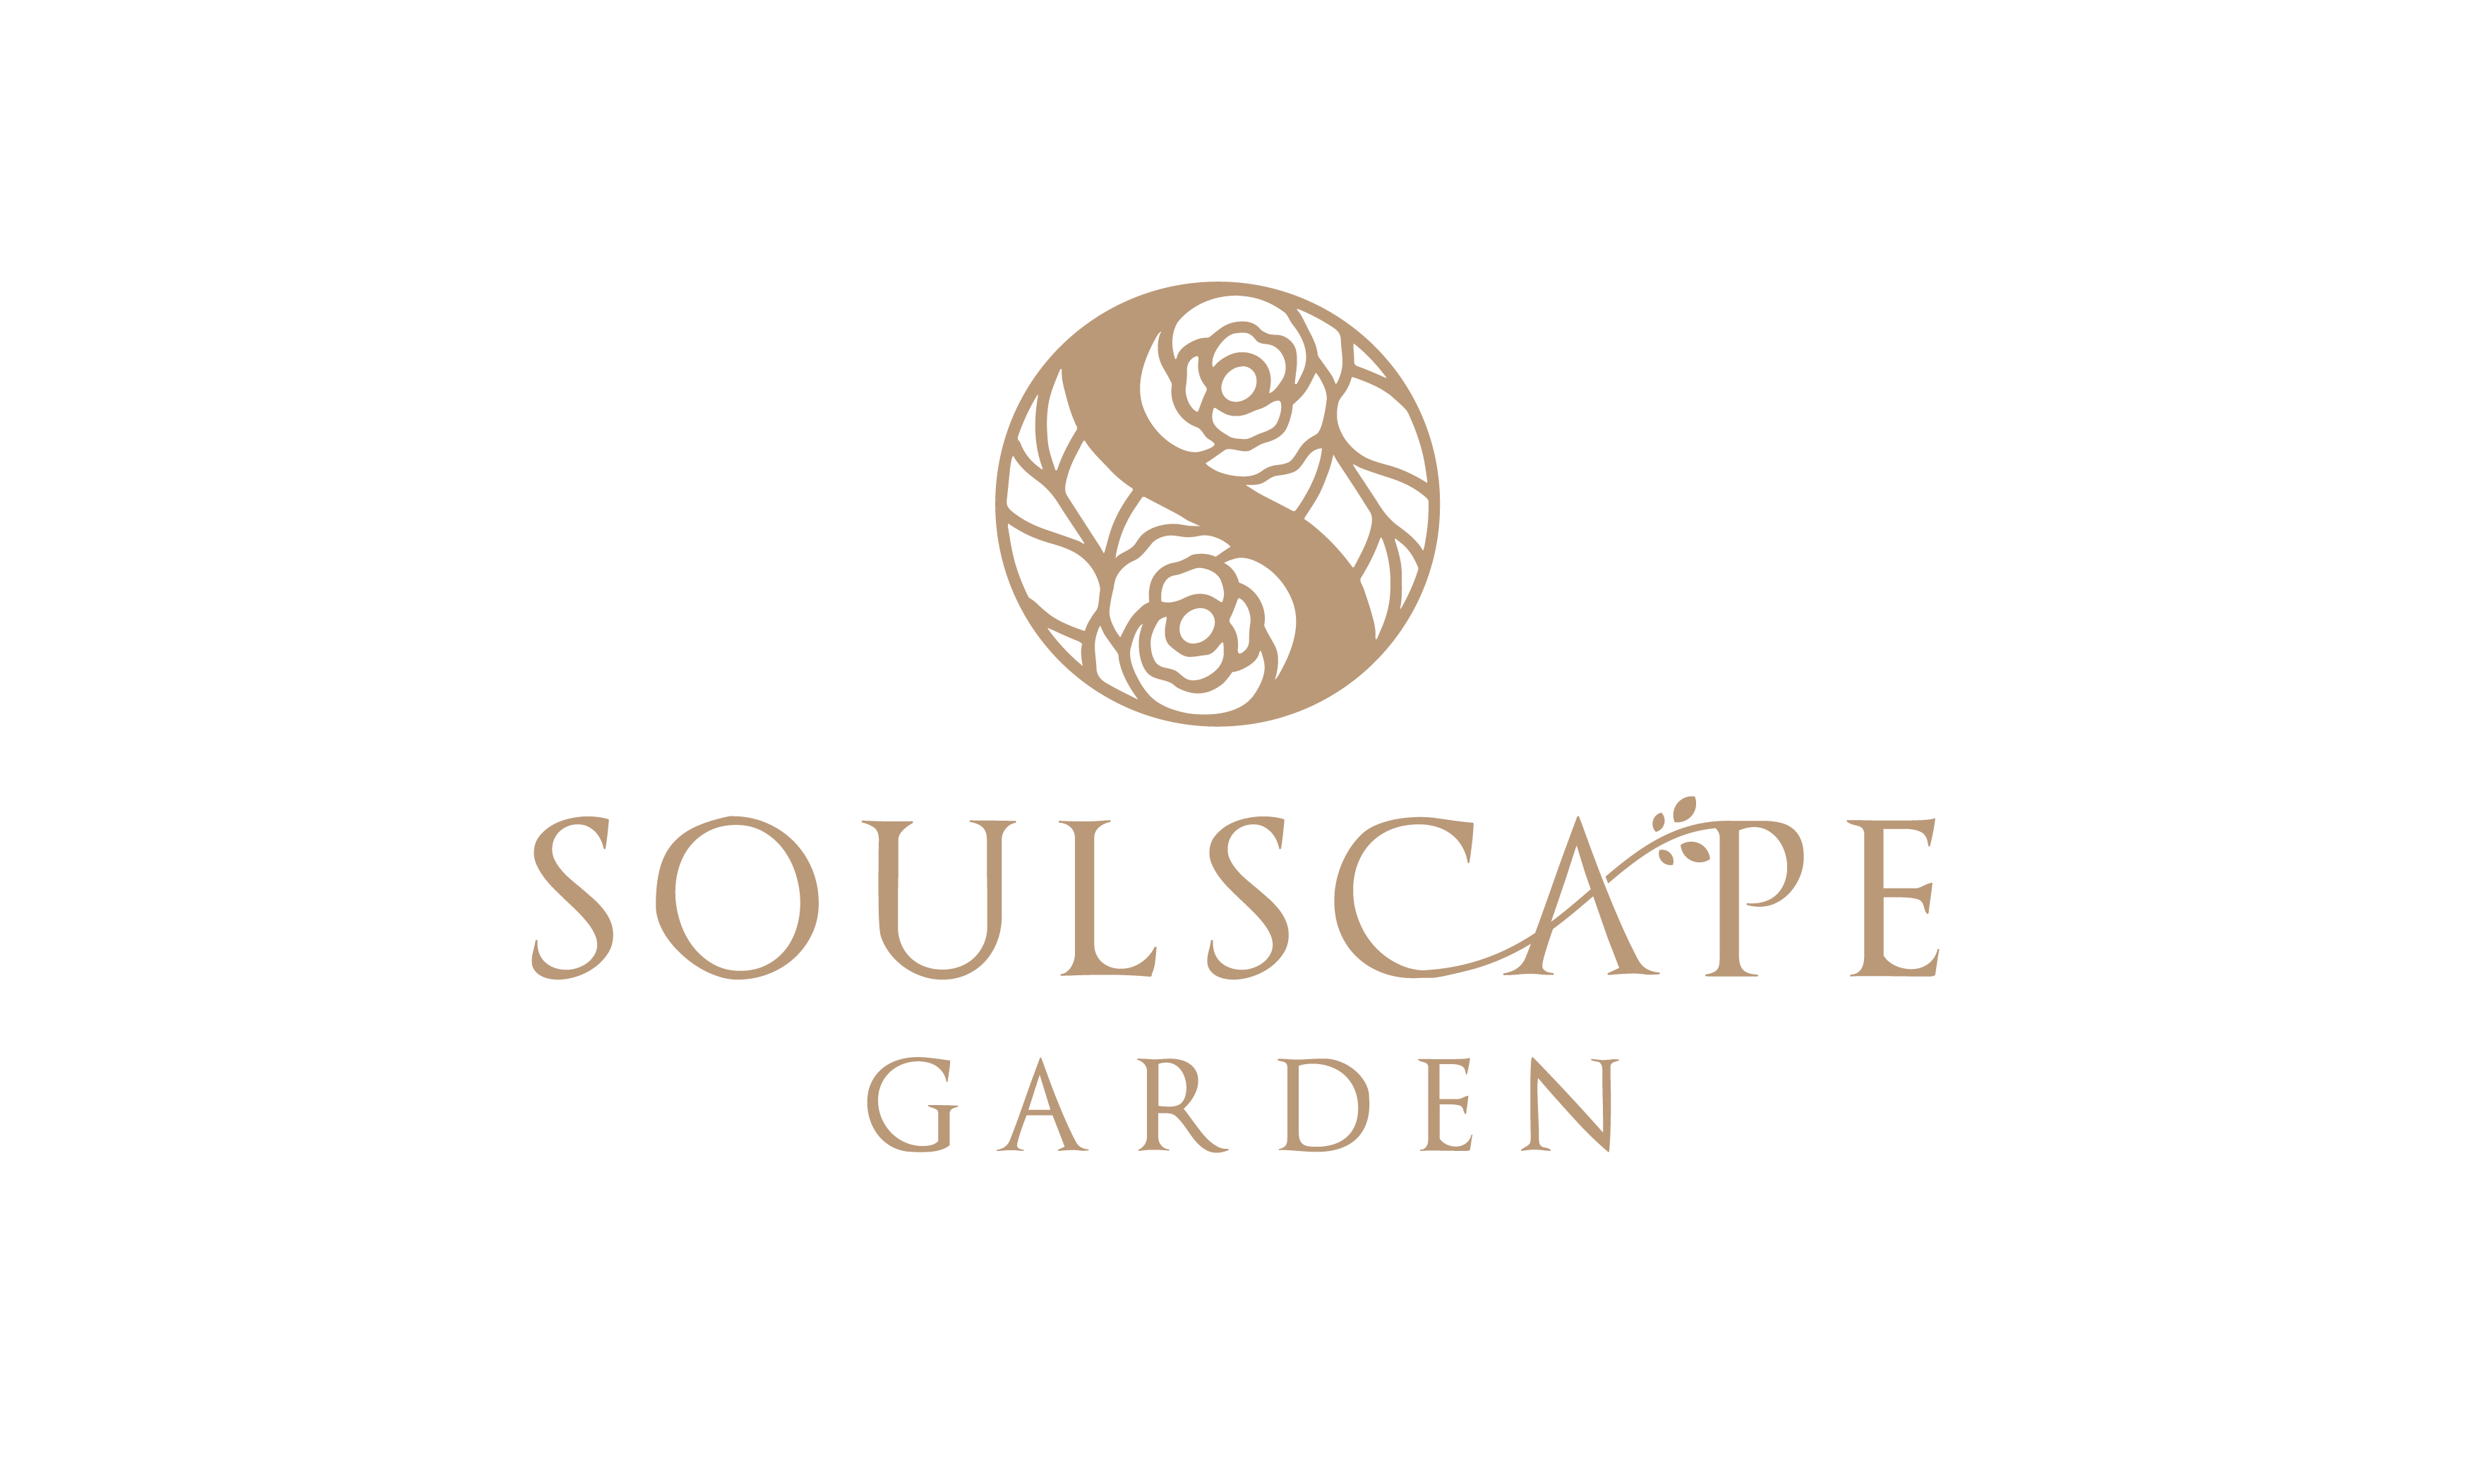 Soulscape Garden